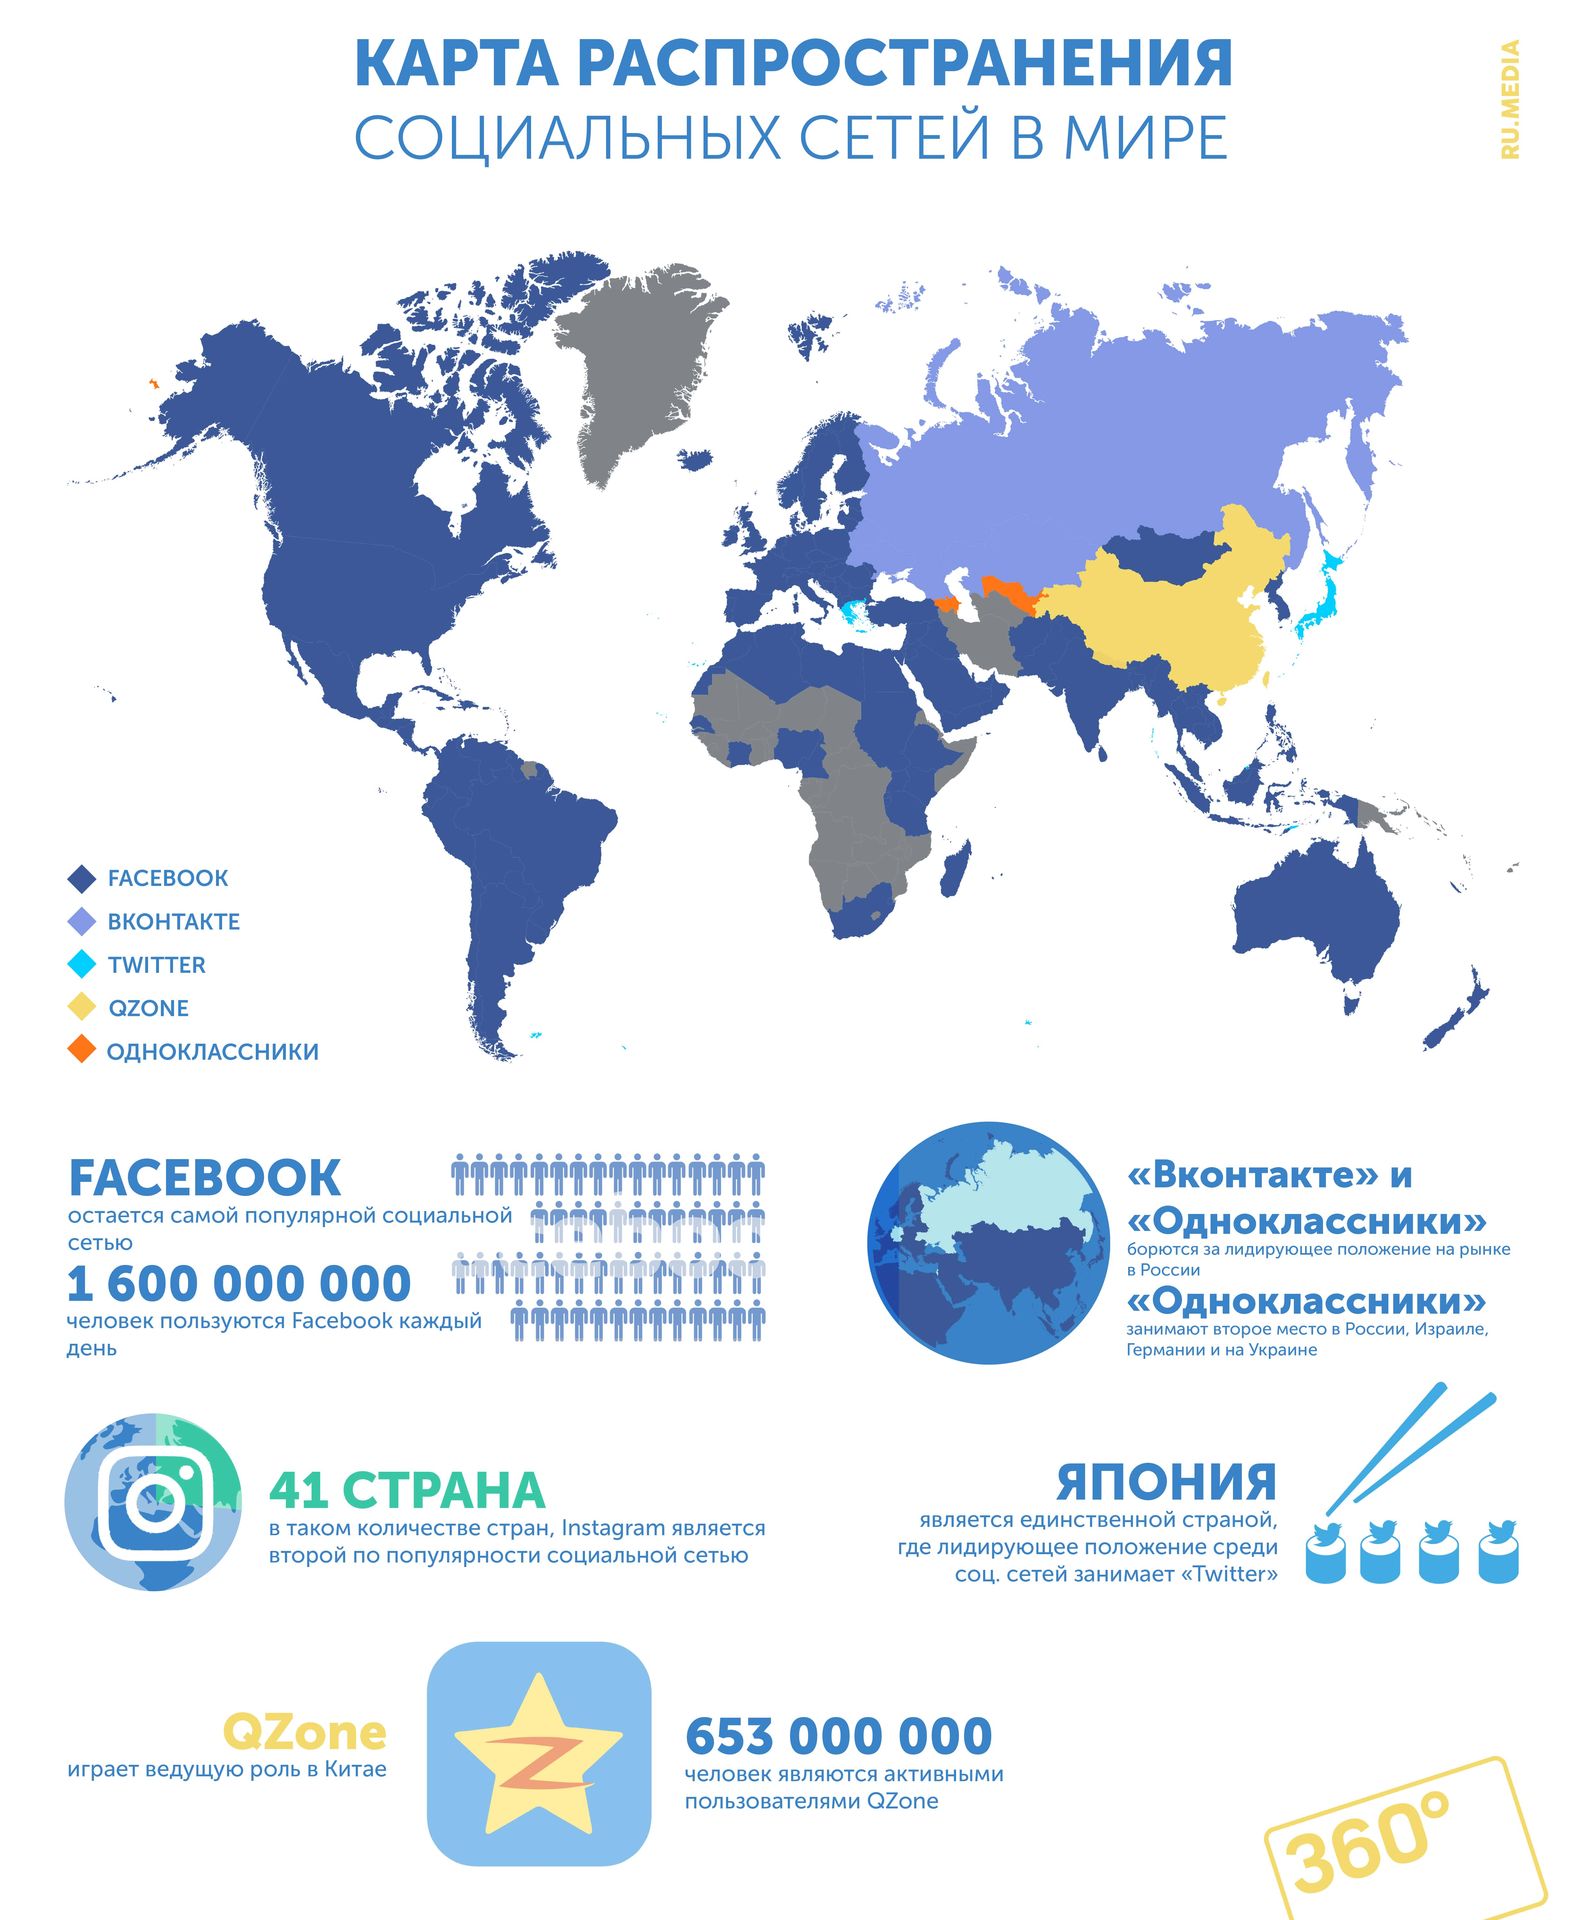 Страны соц сети. Распространение социальных сетей в мире. Карта распространения социальных сетей. Карта социальных сетей в мире. Карта распространения социальных сетей в мире.